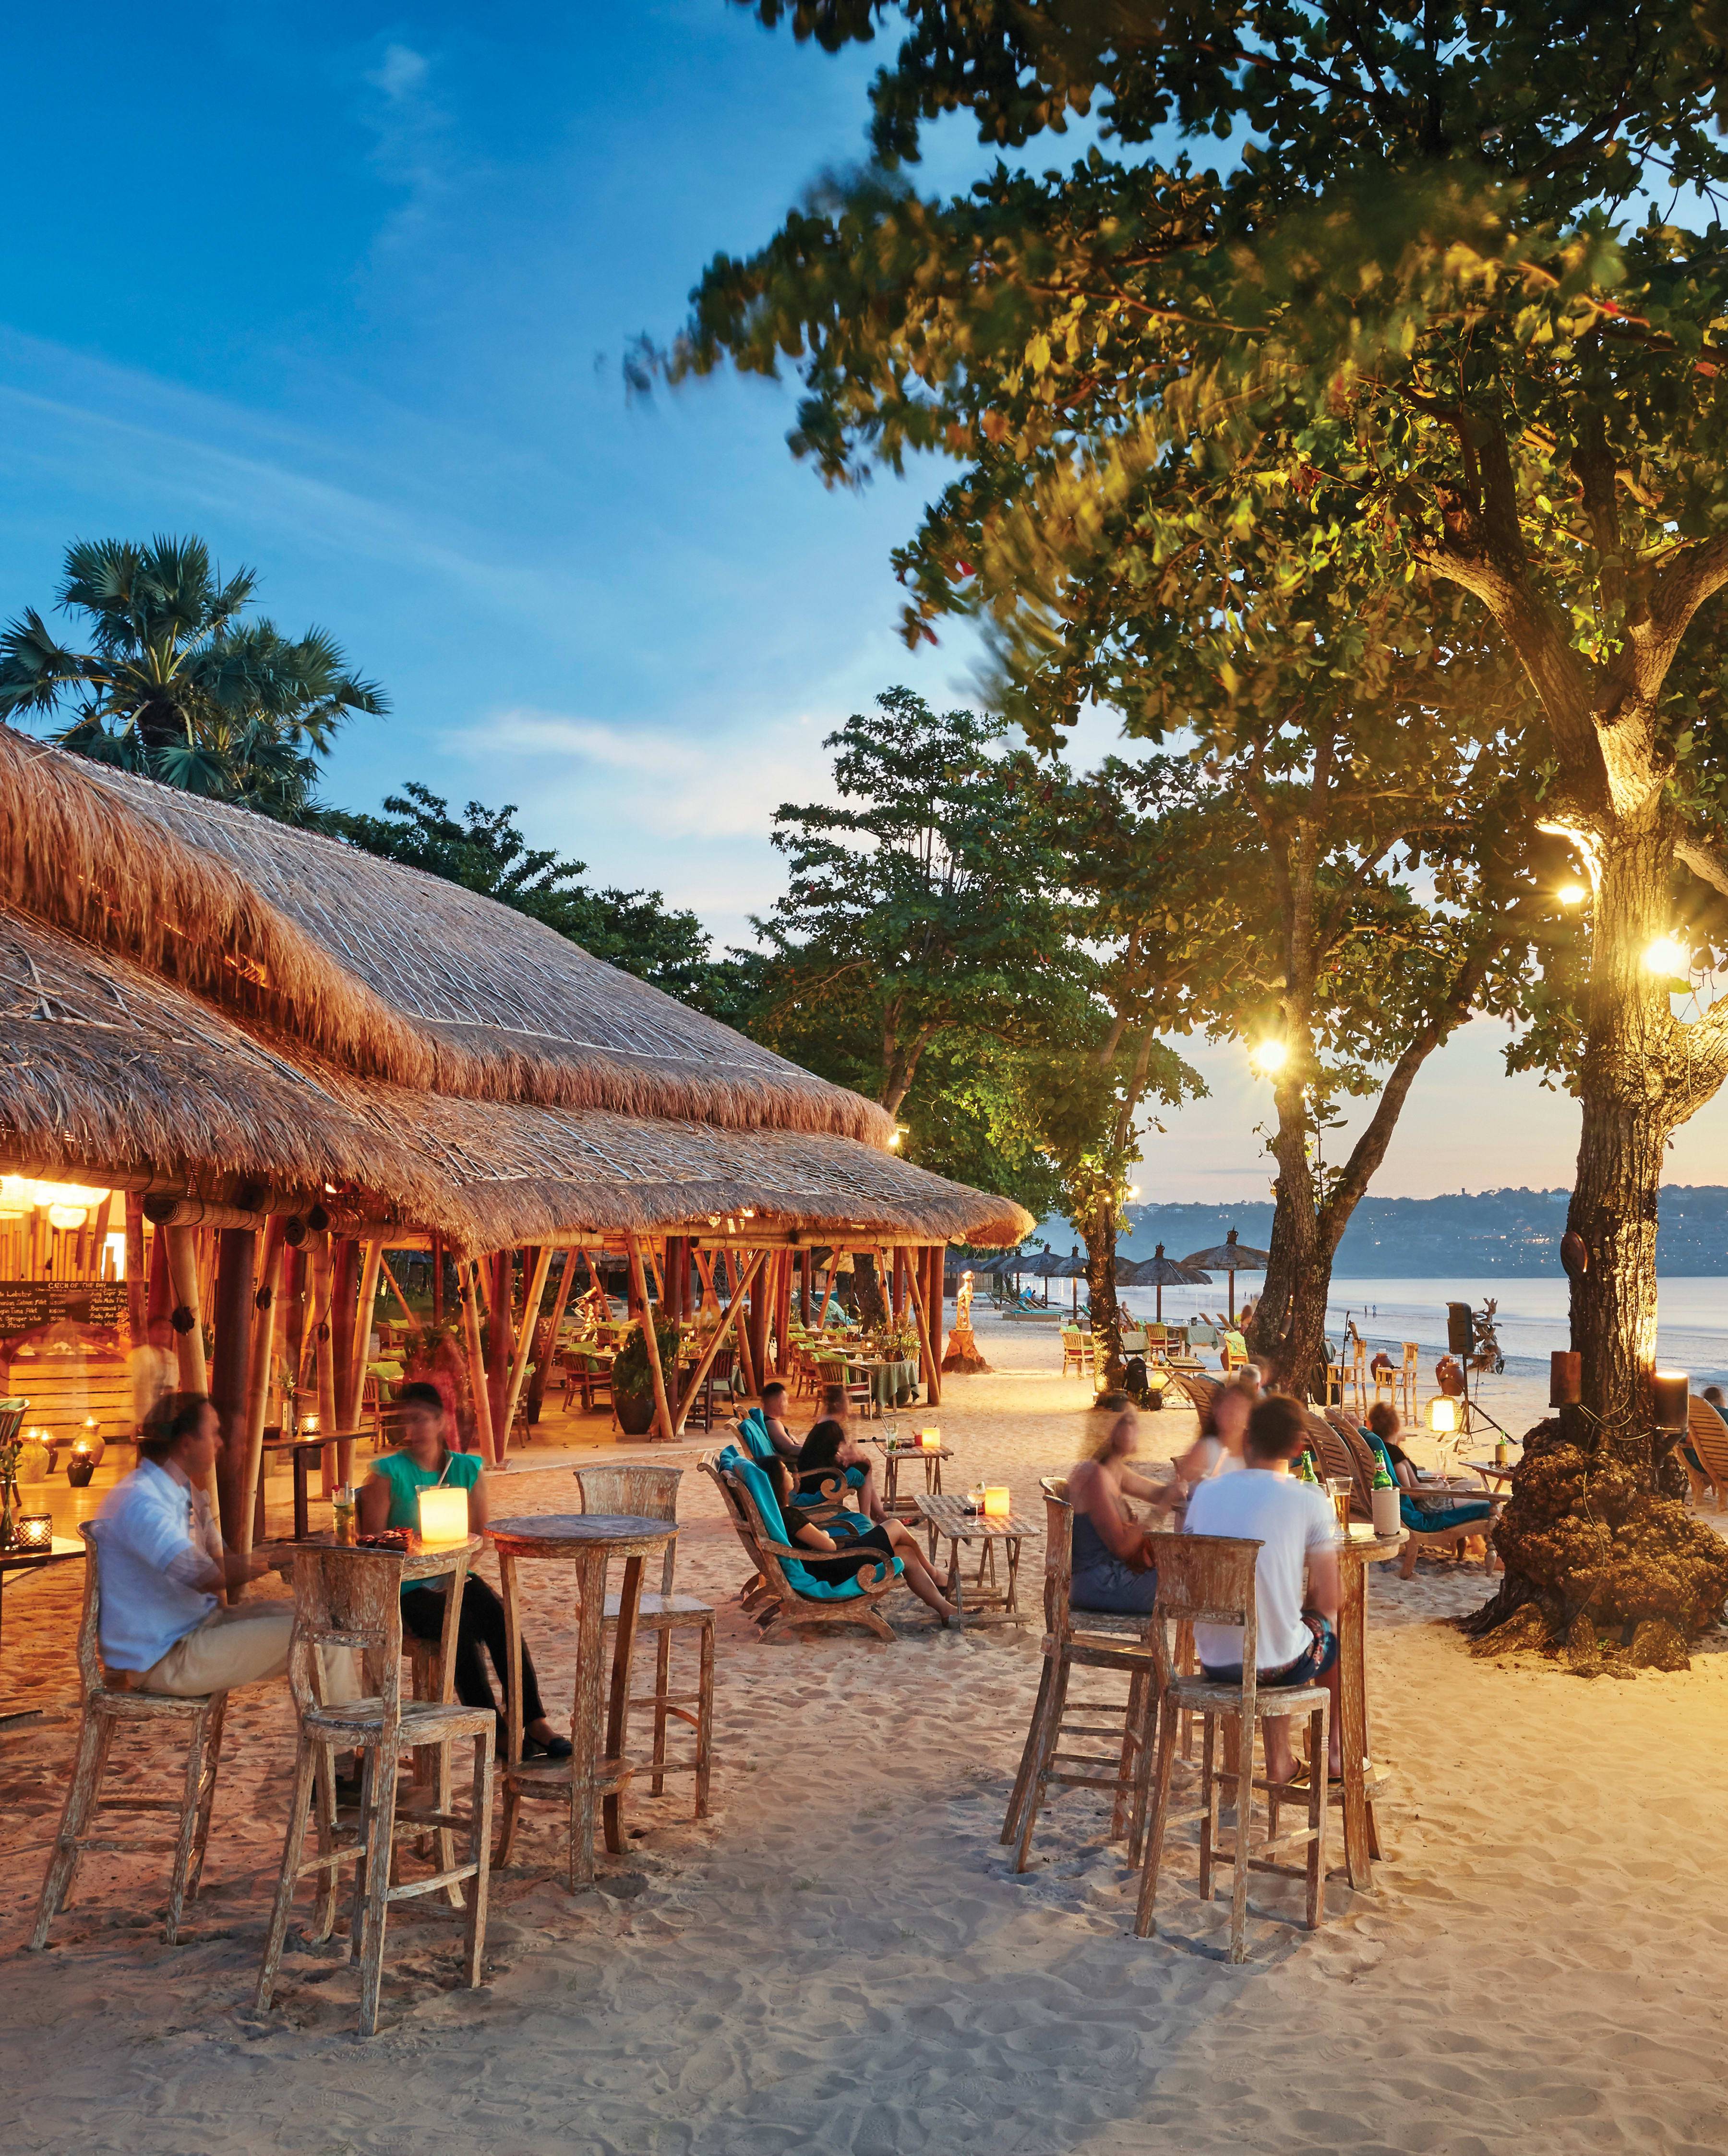 Бали: где лучше пляжи
set travel бали: где лучше пляжи